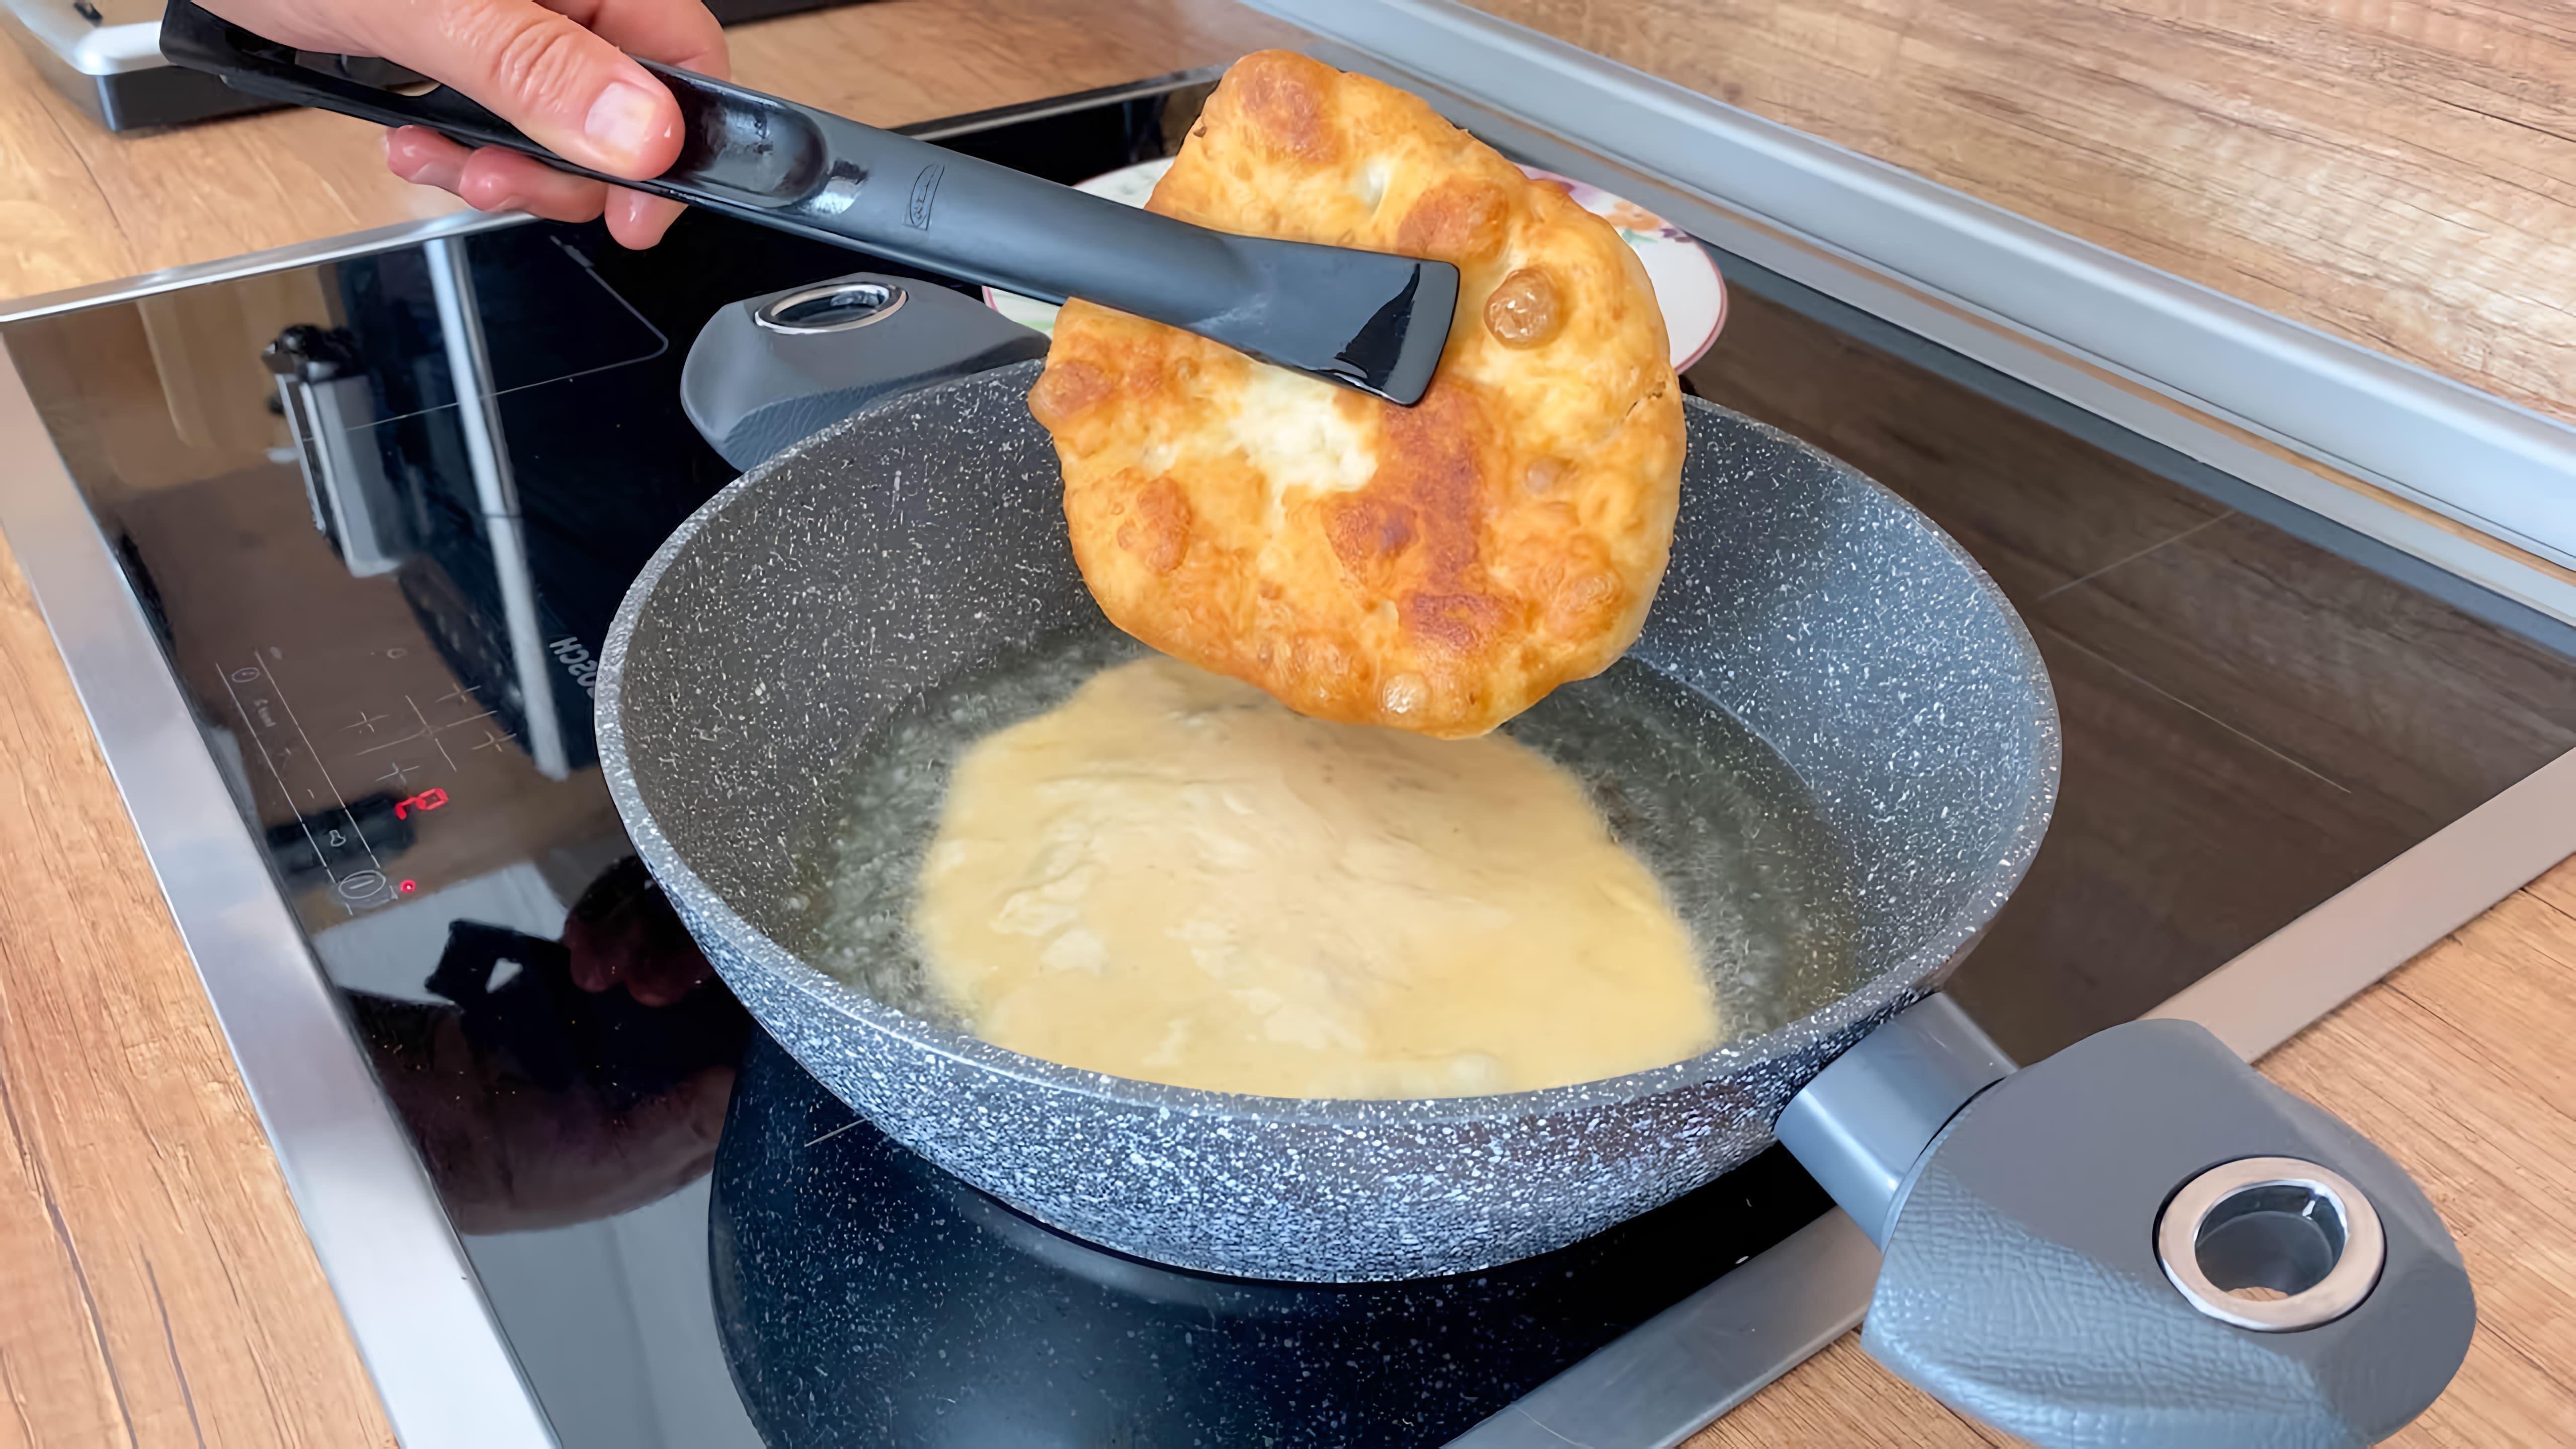 В этом видео демонстрируется процесс приготовления воздушных дырпани - традиционного блюда адыгейской кухни